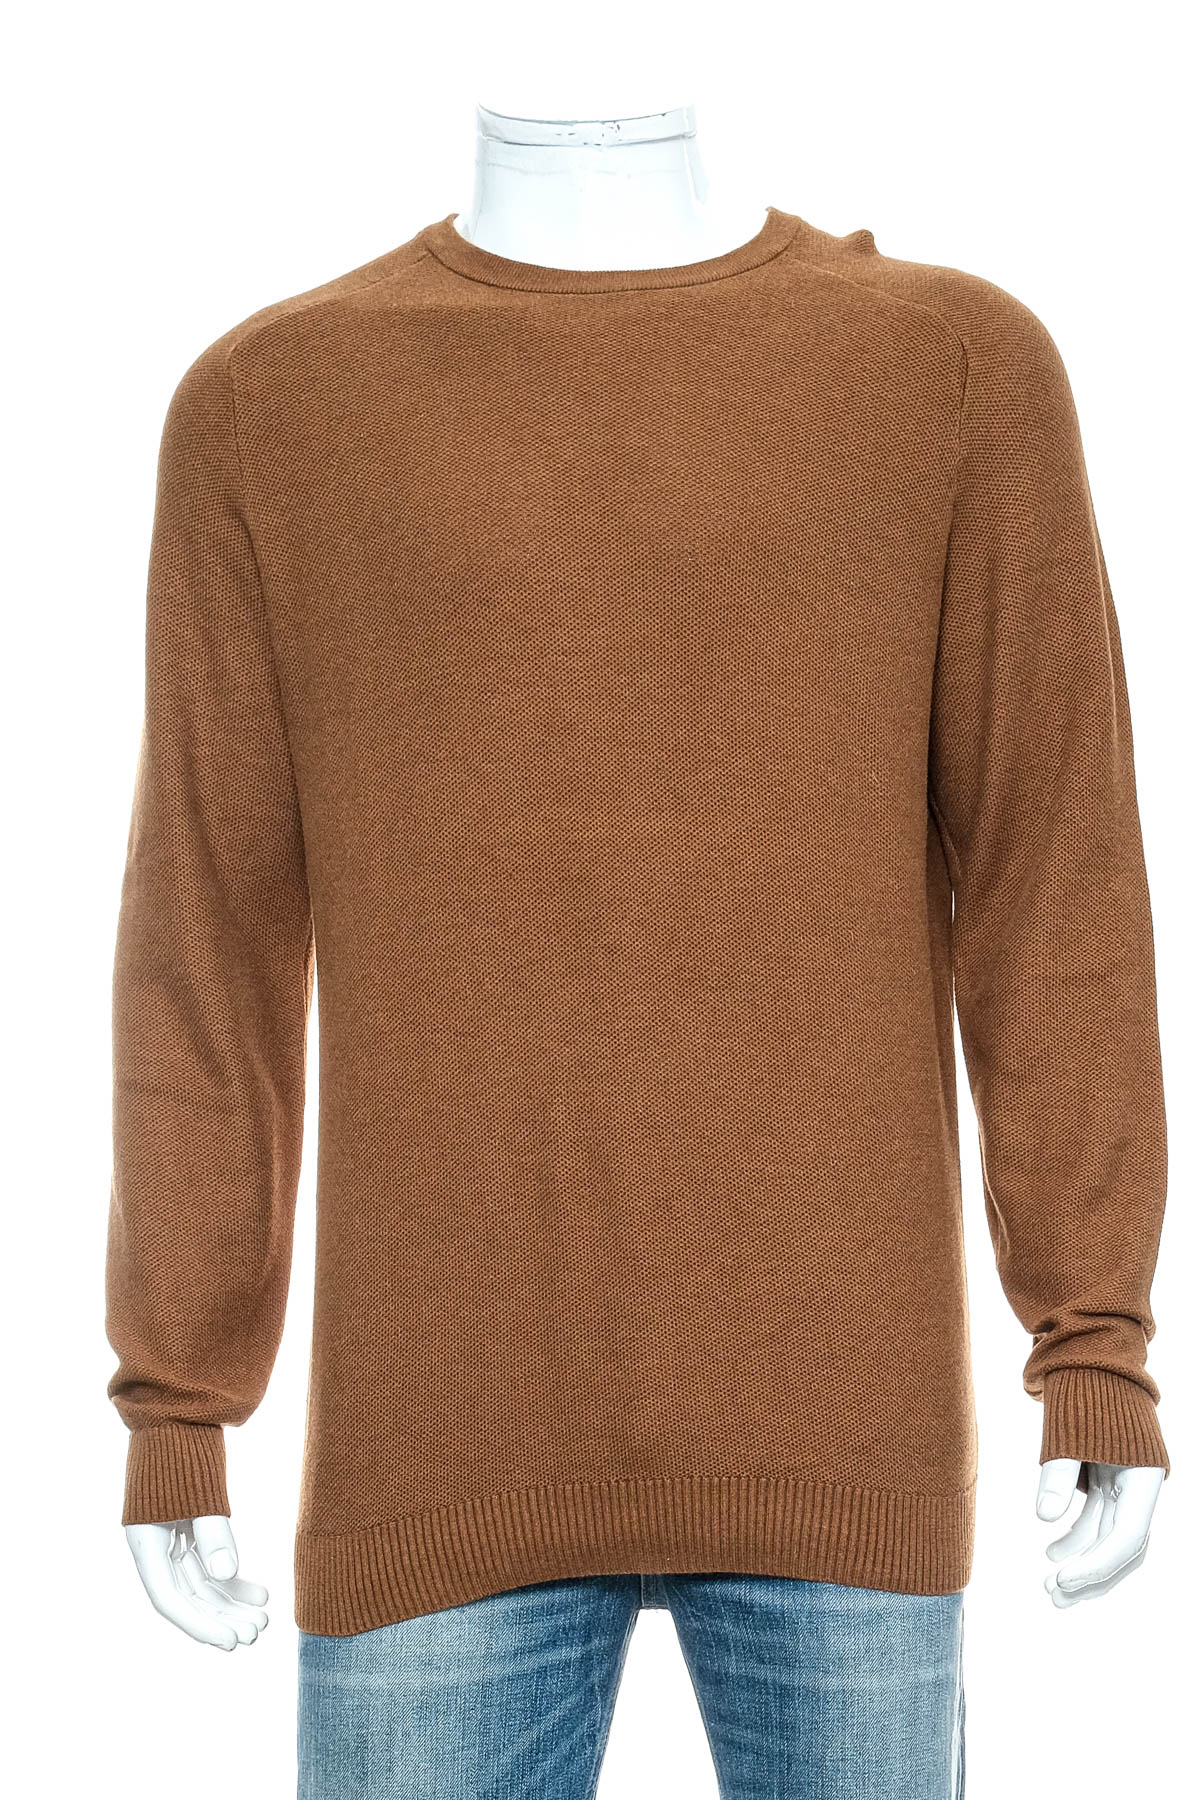 Men's sweater - ESPRIT - 0